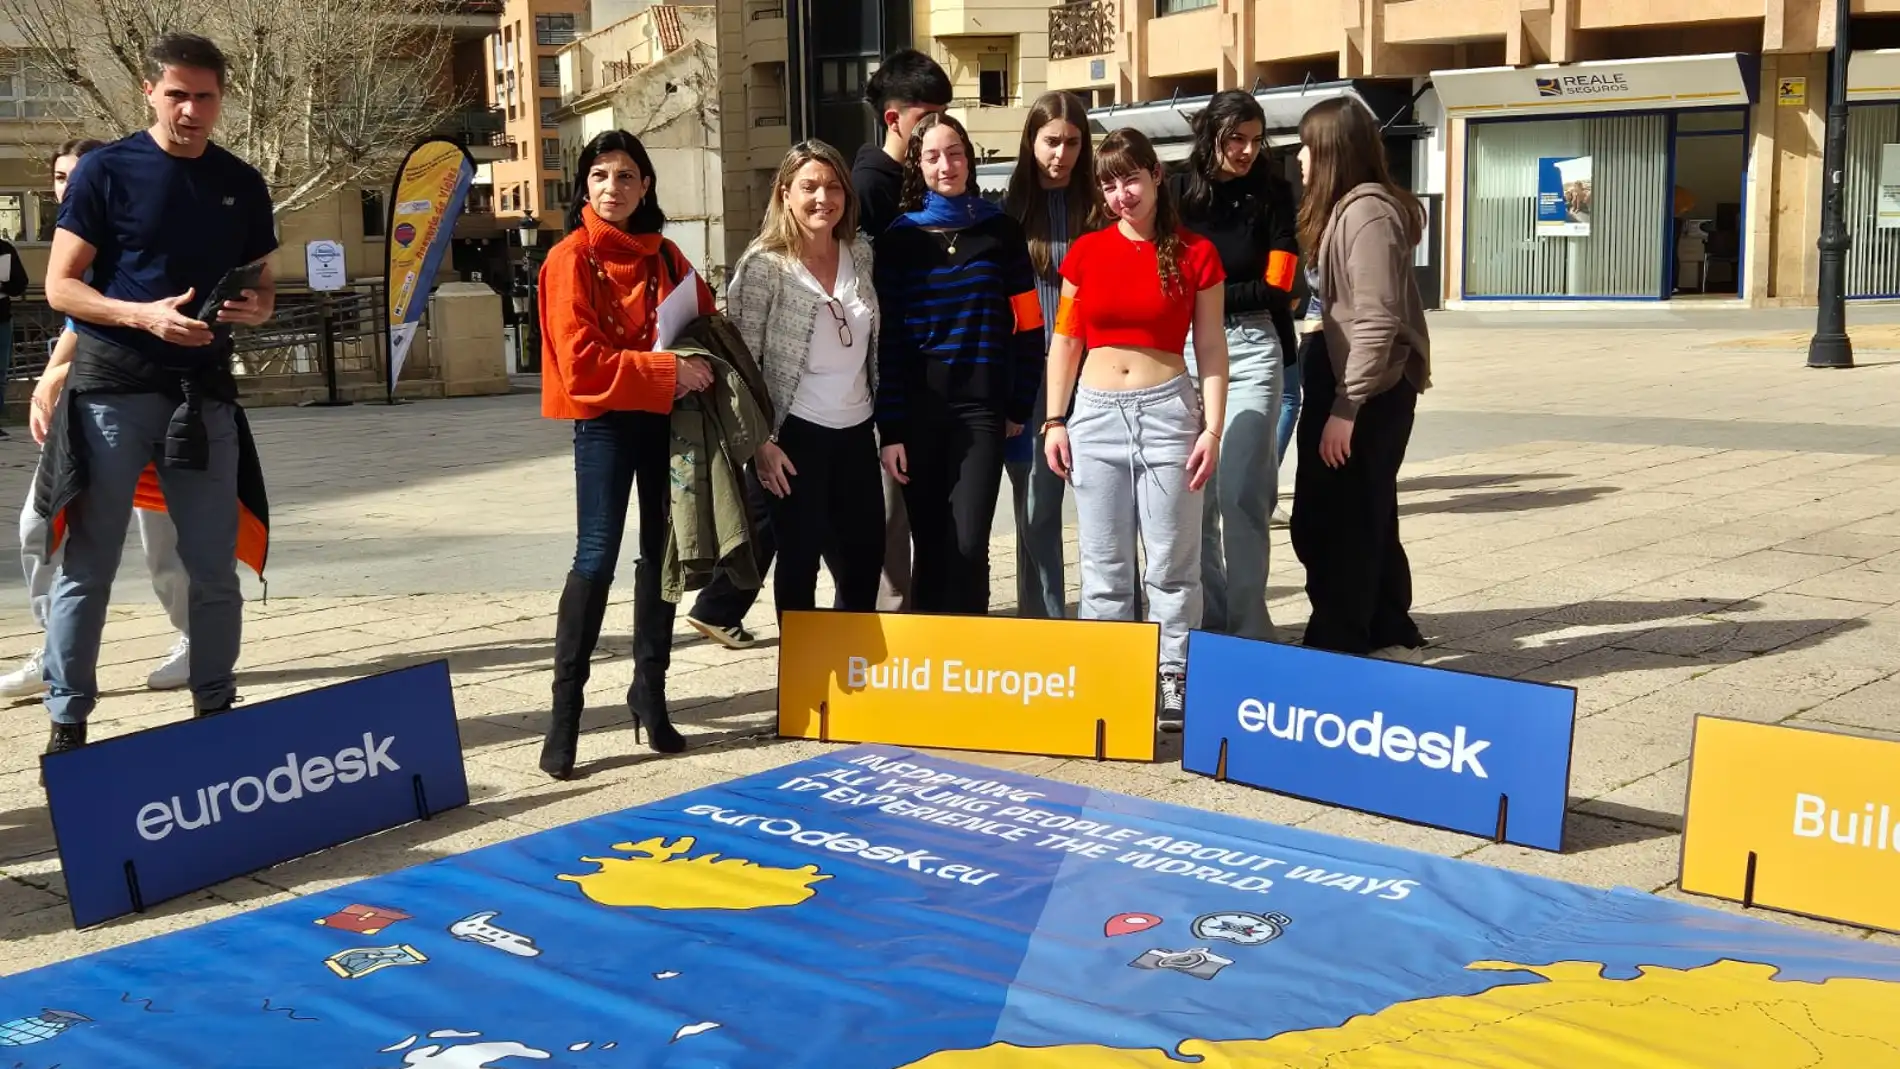 Ayudas de 10.000 euros a nueve asociaciones juveniles de la ciudad 